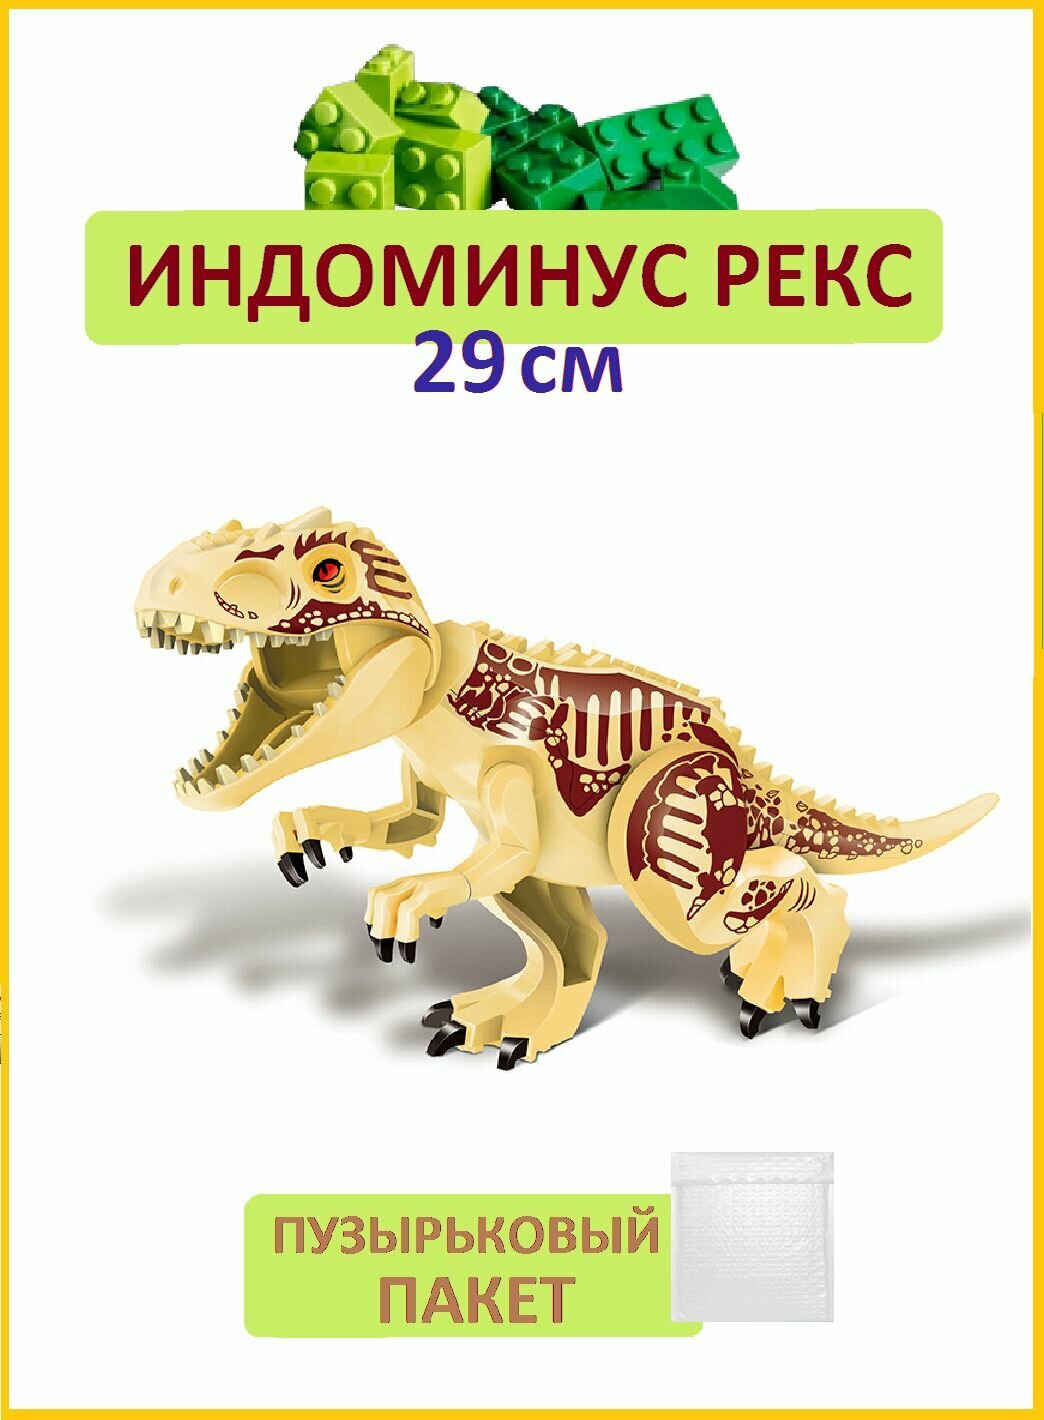 Индоминус Рекс бежевый большой, 27 см, Динозавр фигурка конструктор, Парк Юрского периода